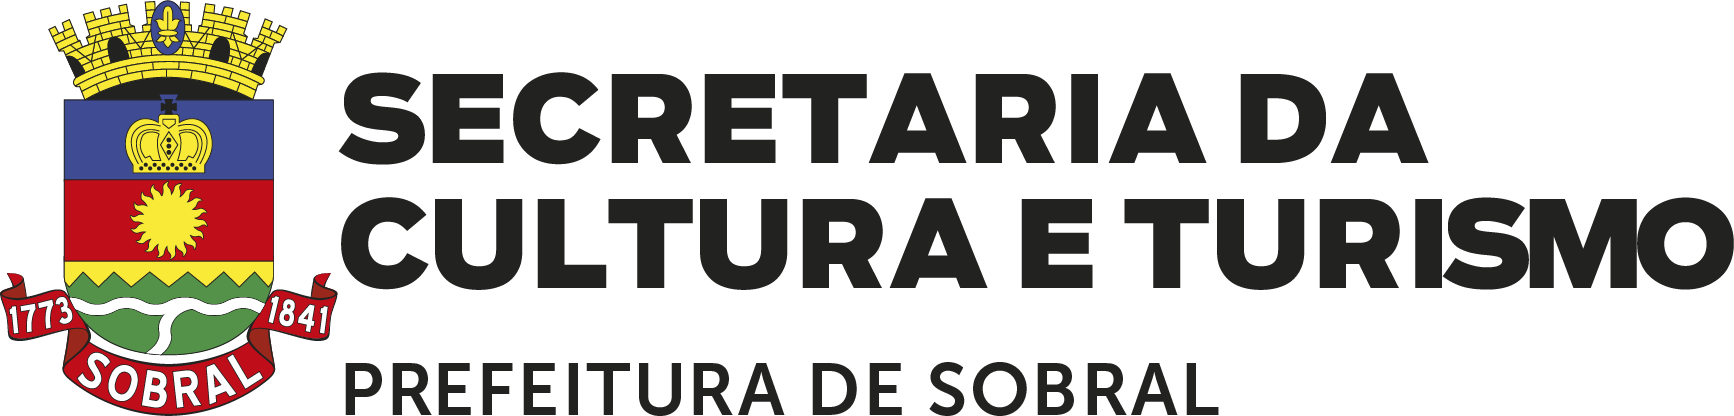 Secretaria da Cultura e Turismo de Sobral